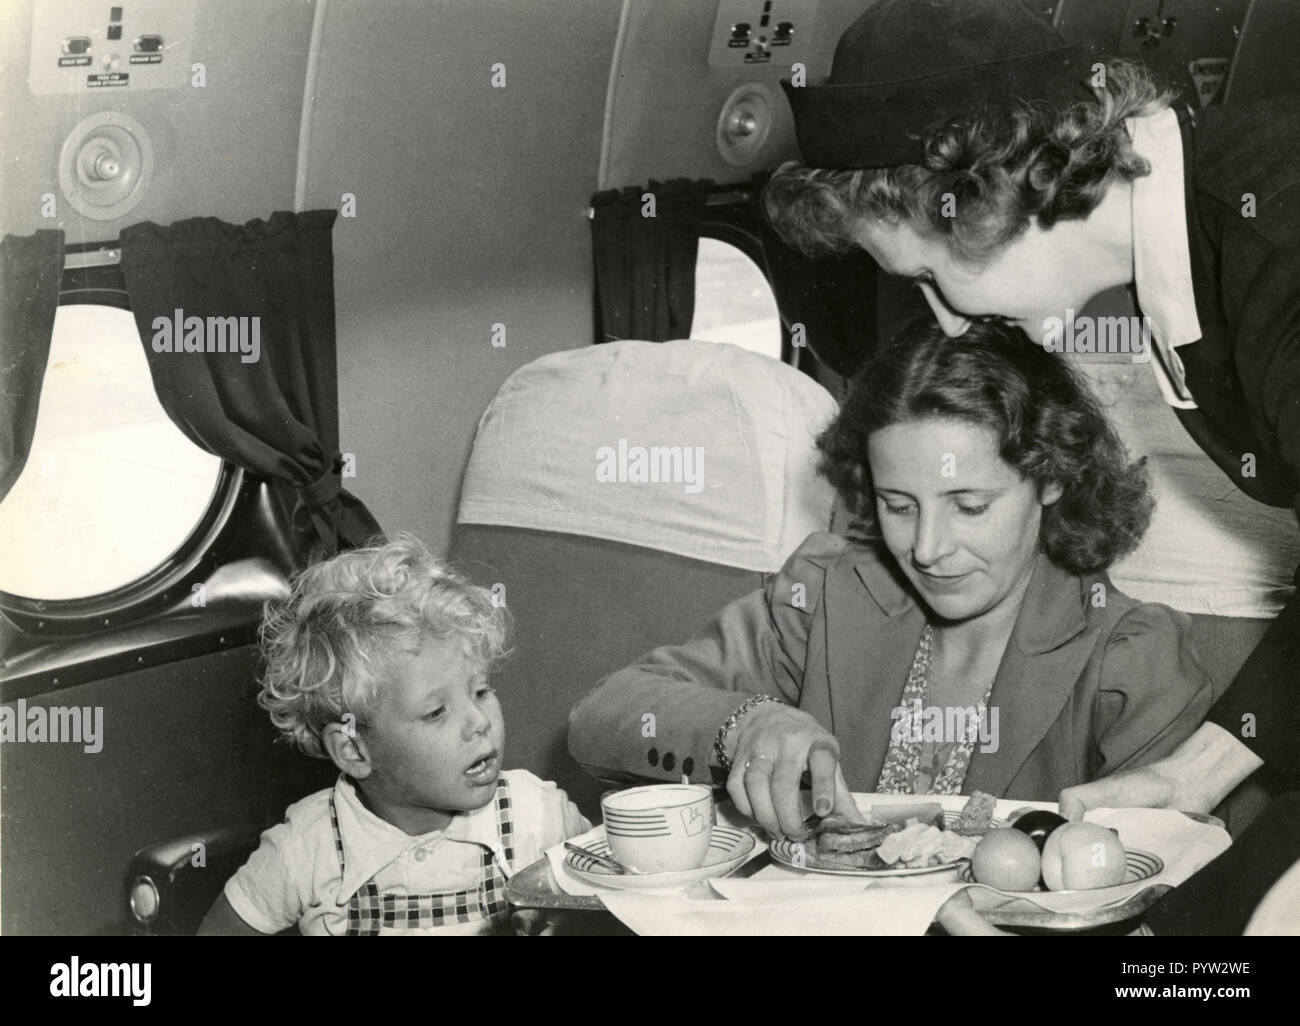 Antiguo servicio a bordo del avión, 1960 Foto de stock